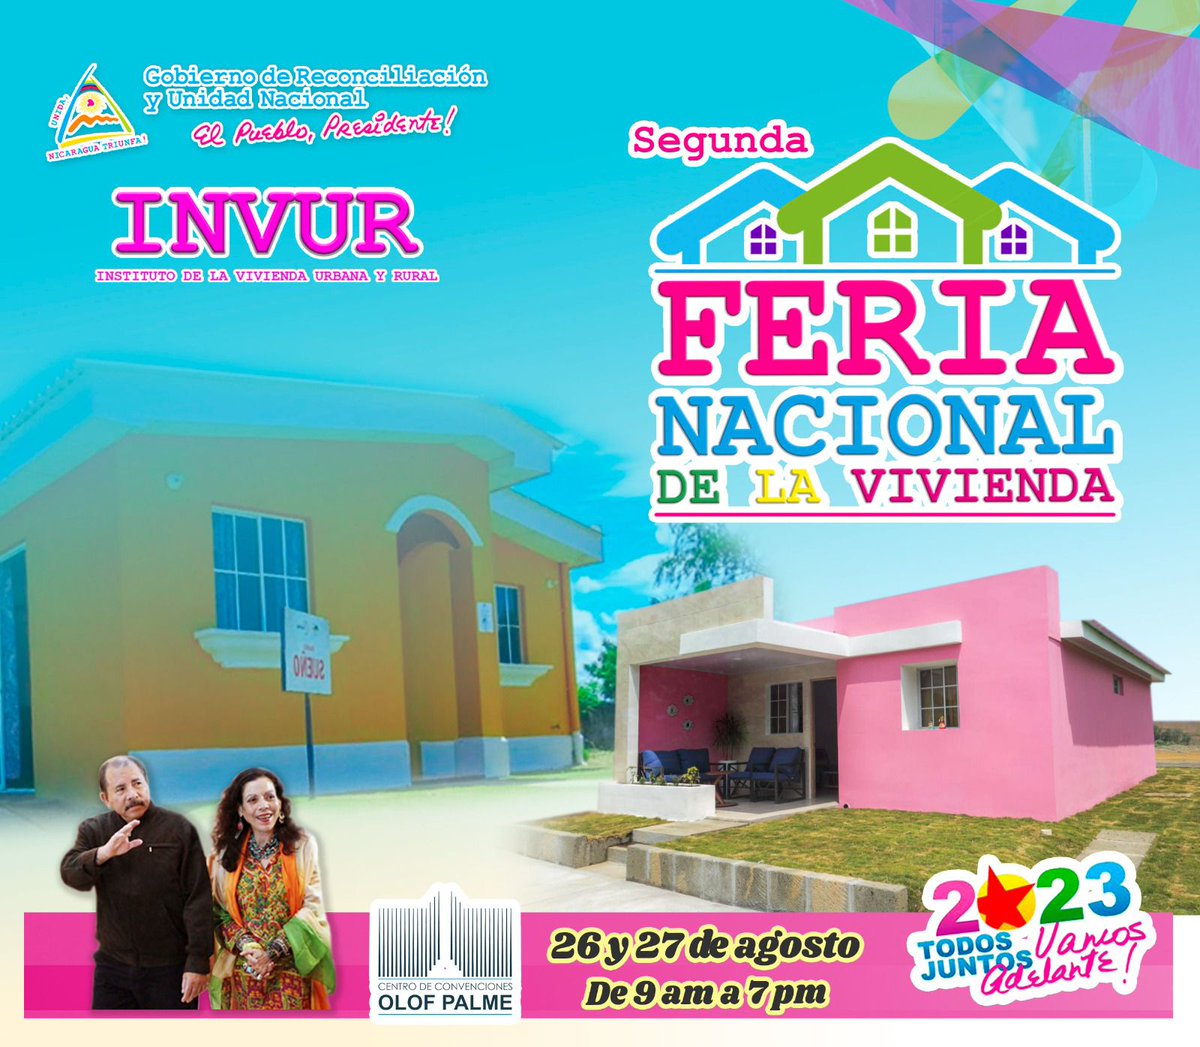 #Nicaragua | Feria Nacional impulsada por nuestro Buen Gobierno Sandinista a través de INVUR. Llegó el momento de cumplir tu sueño de una casita propia !!! 🇳🇮✊🏻🔴⚫ #ManaguaSandinista #4419SiempreMasAlla